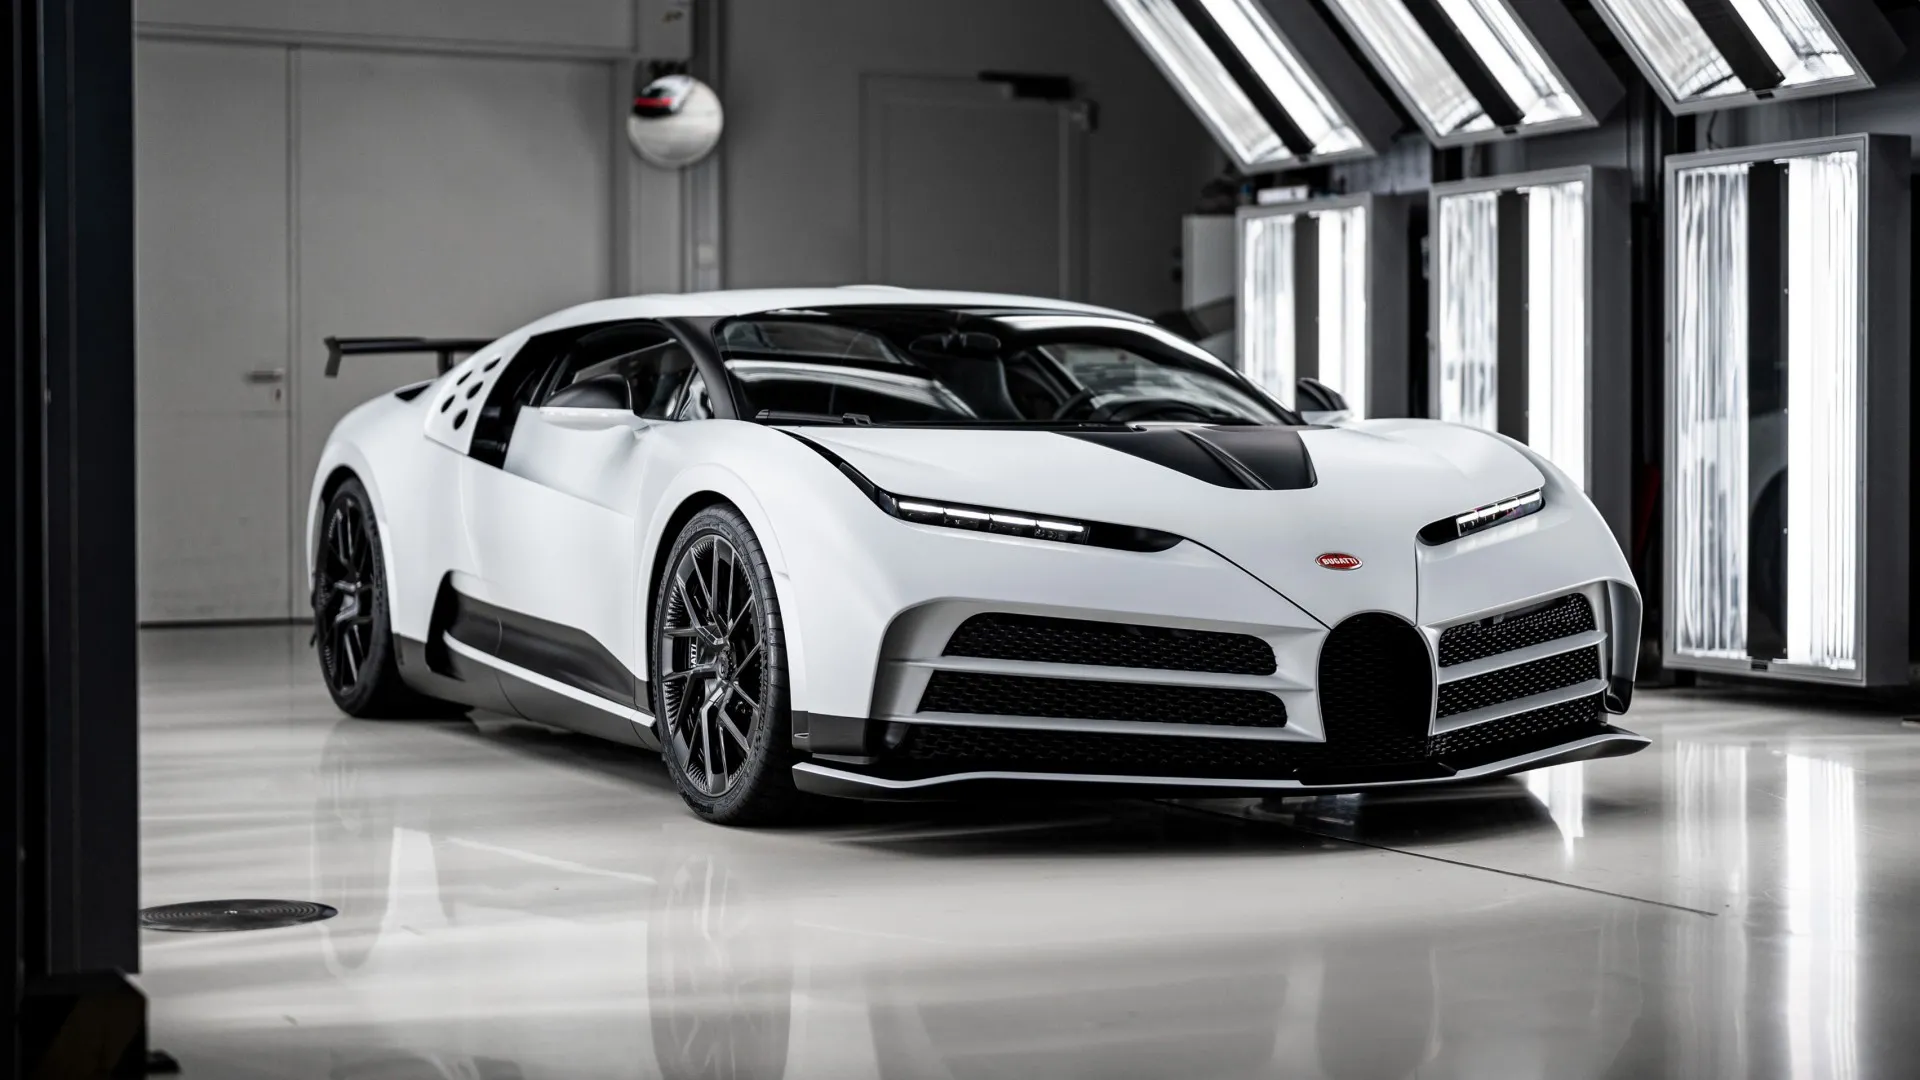 ¿Cómo consigue Bugatti una precisión tan sumamente perfecta?